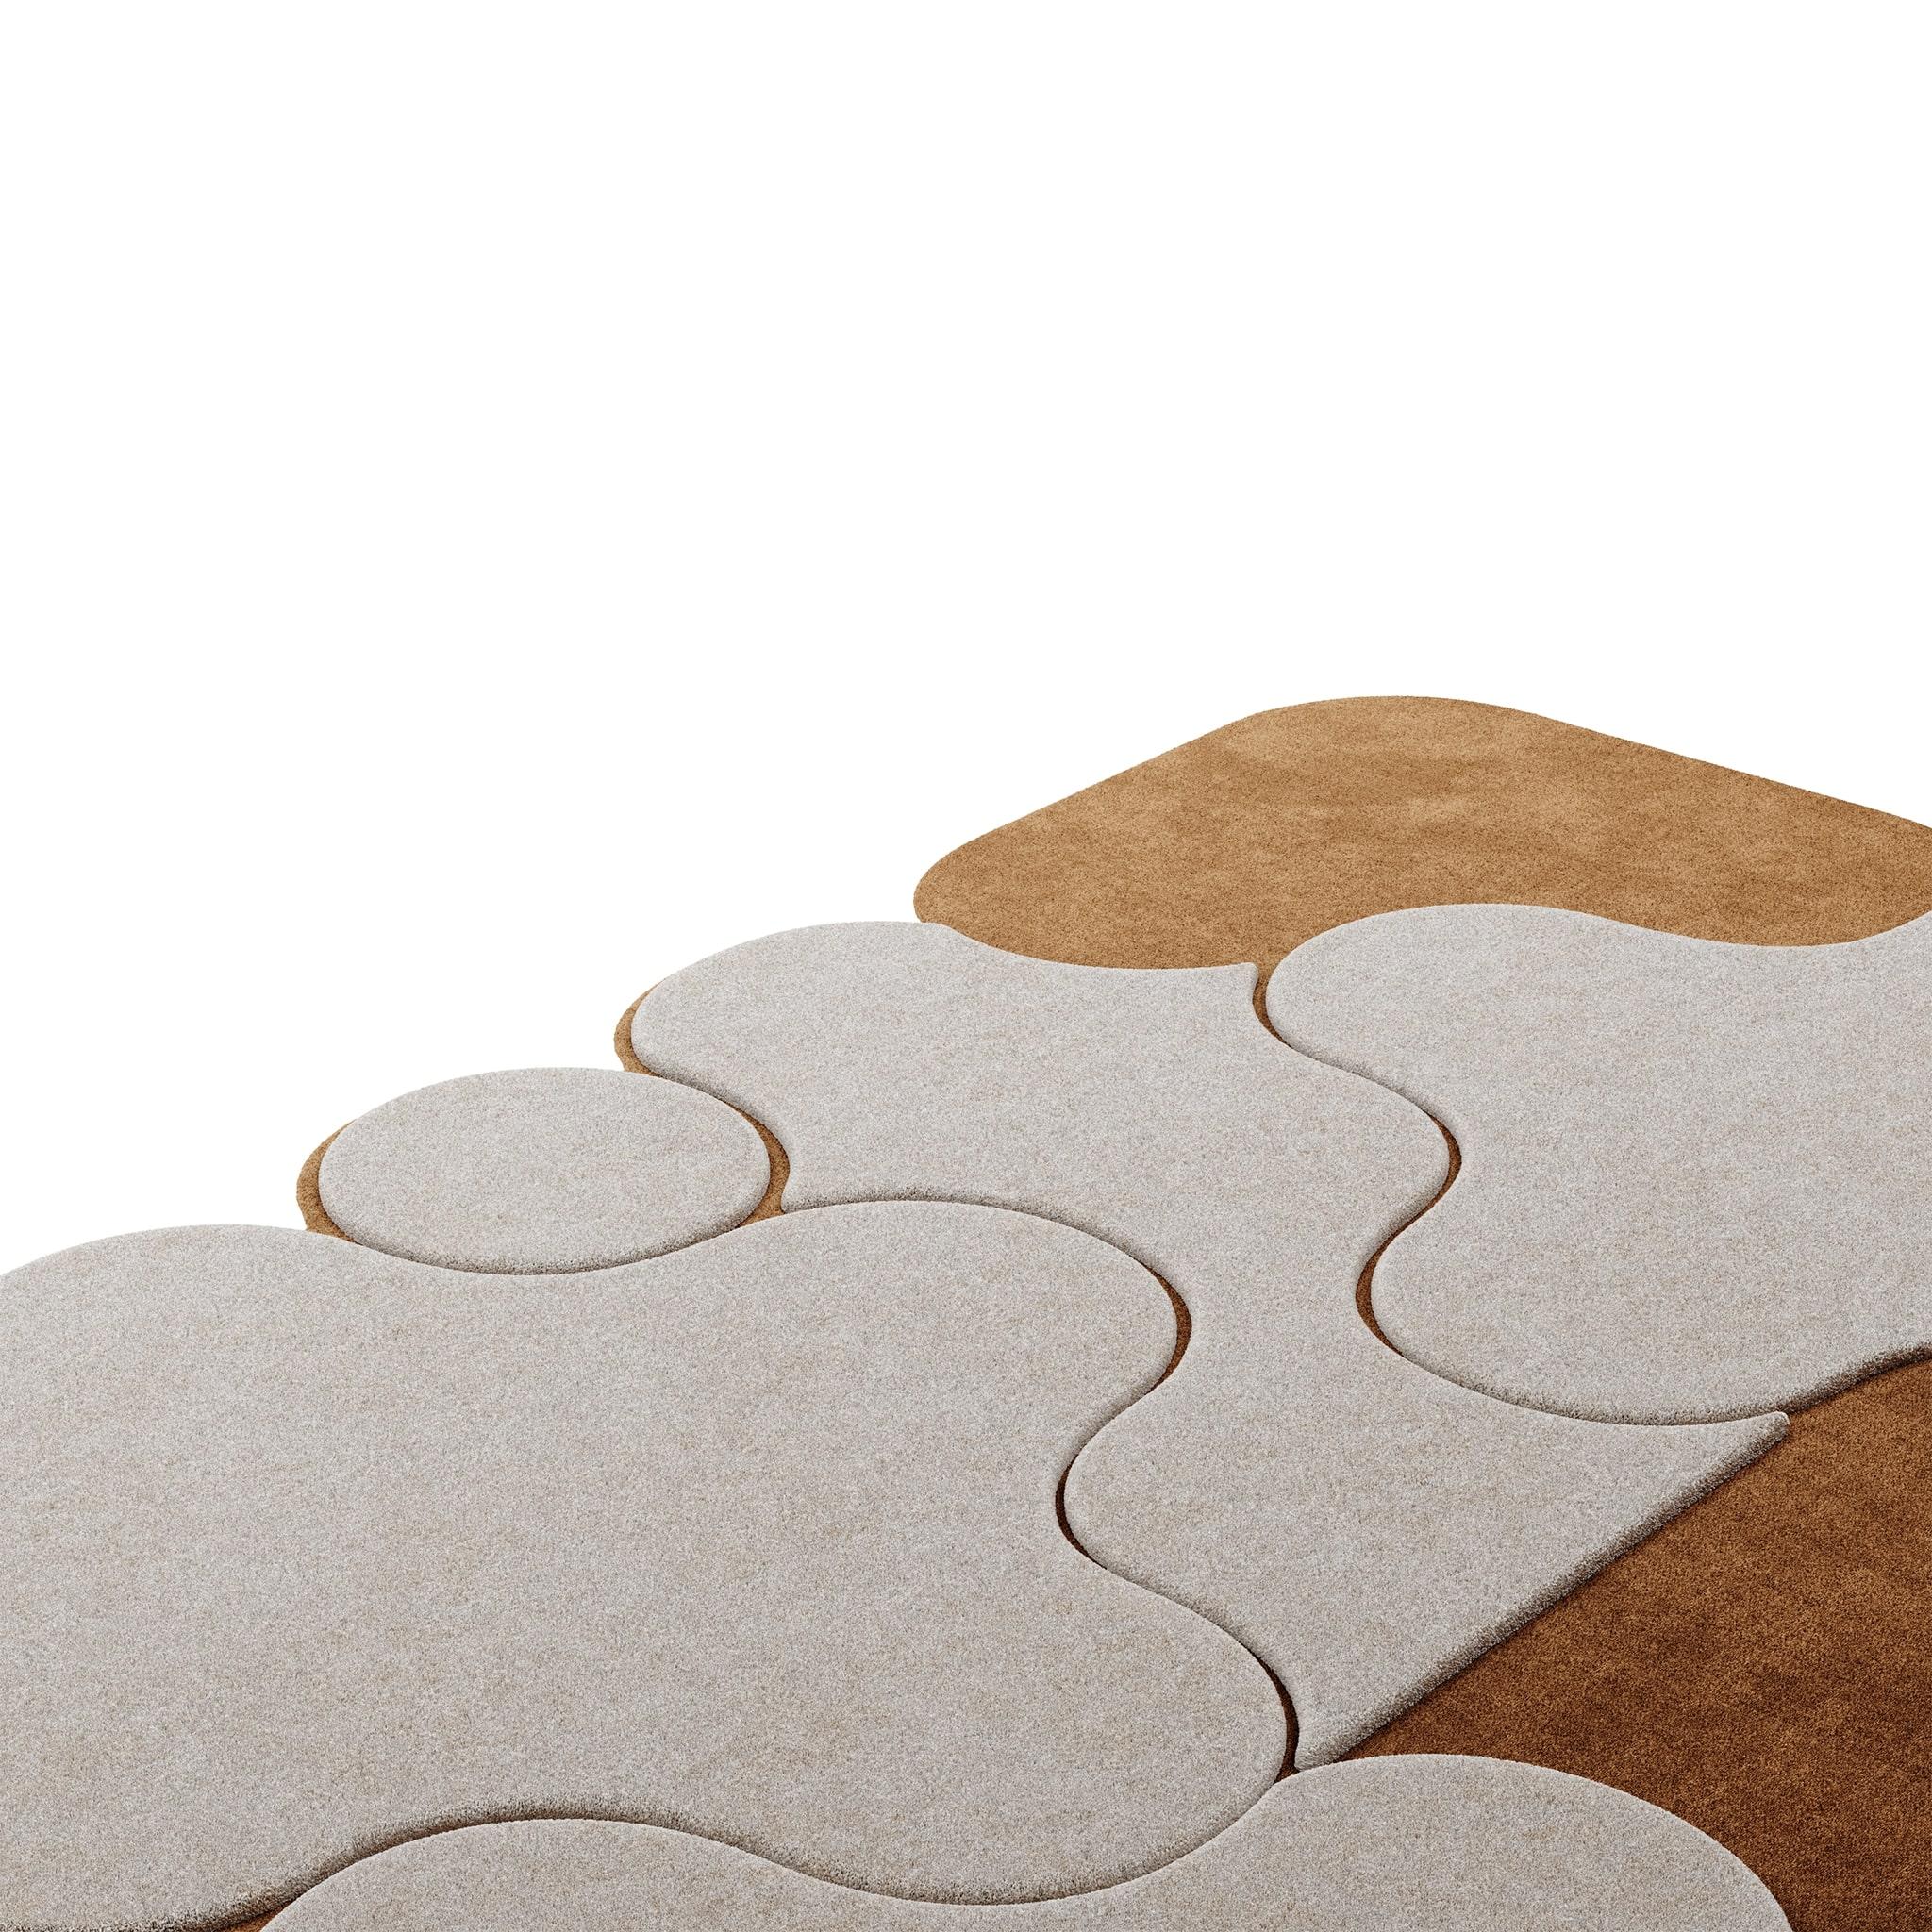 Tapis Pastel #10 ist ein pastellfarbener Teppich, der das Flair der Jahrhundertmitte mit dem Stil von Memphis Design verbindet. Die Kombination aus gedämpften Sandtönen und gebranntem Zucker verleiht jedem Zuhause Eleganz und Wärme.
Dieser